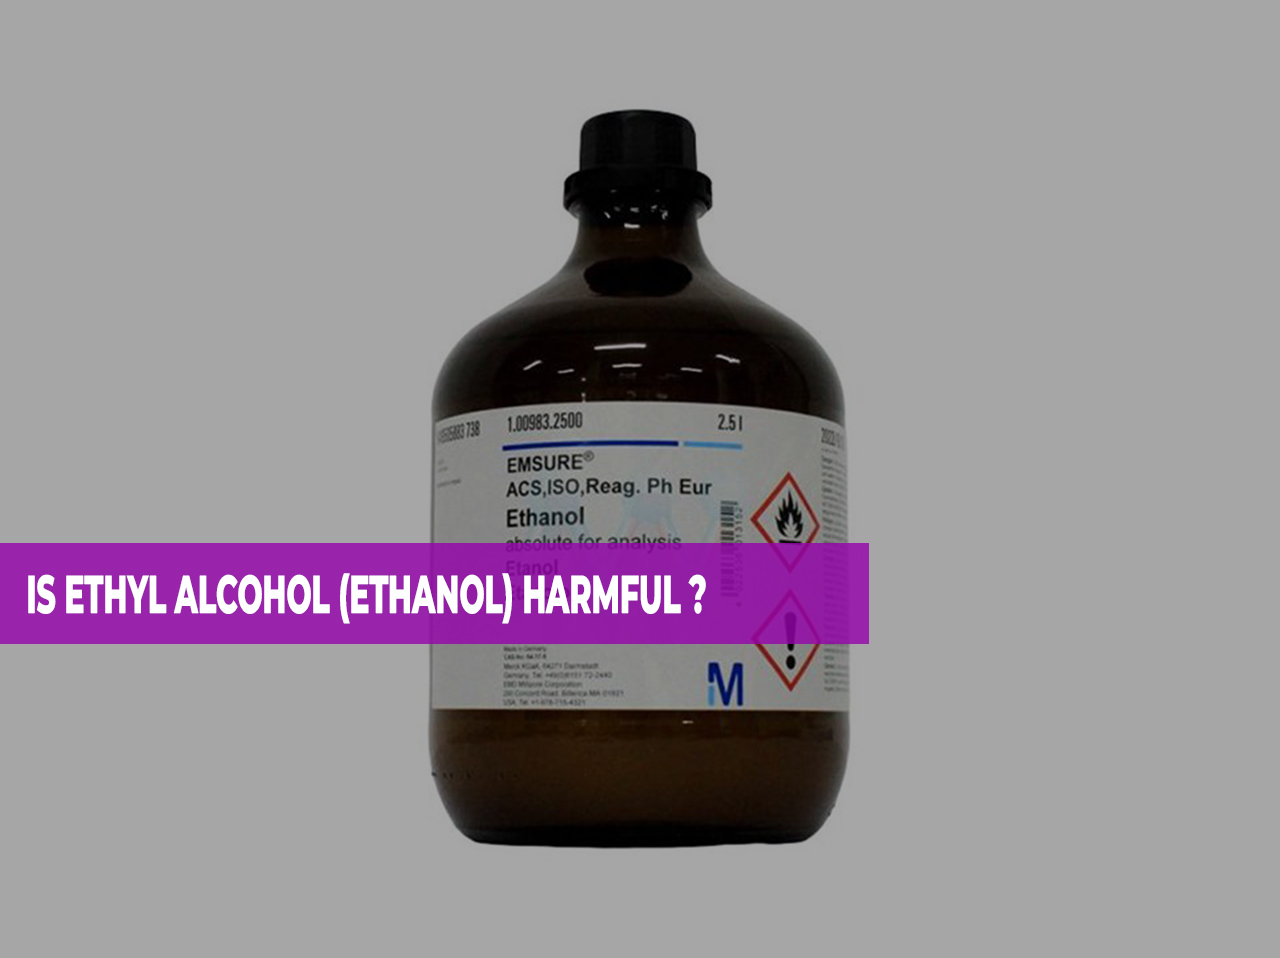 IS ETHYL ALCOHOL (ETHANOL) HARMFUL ?